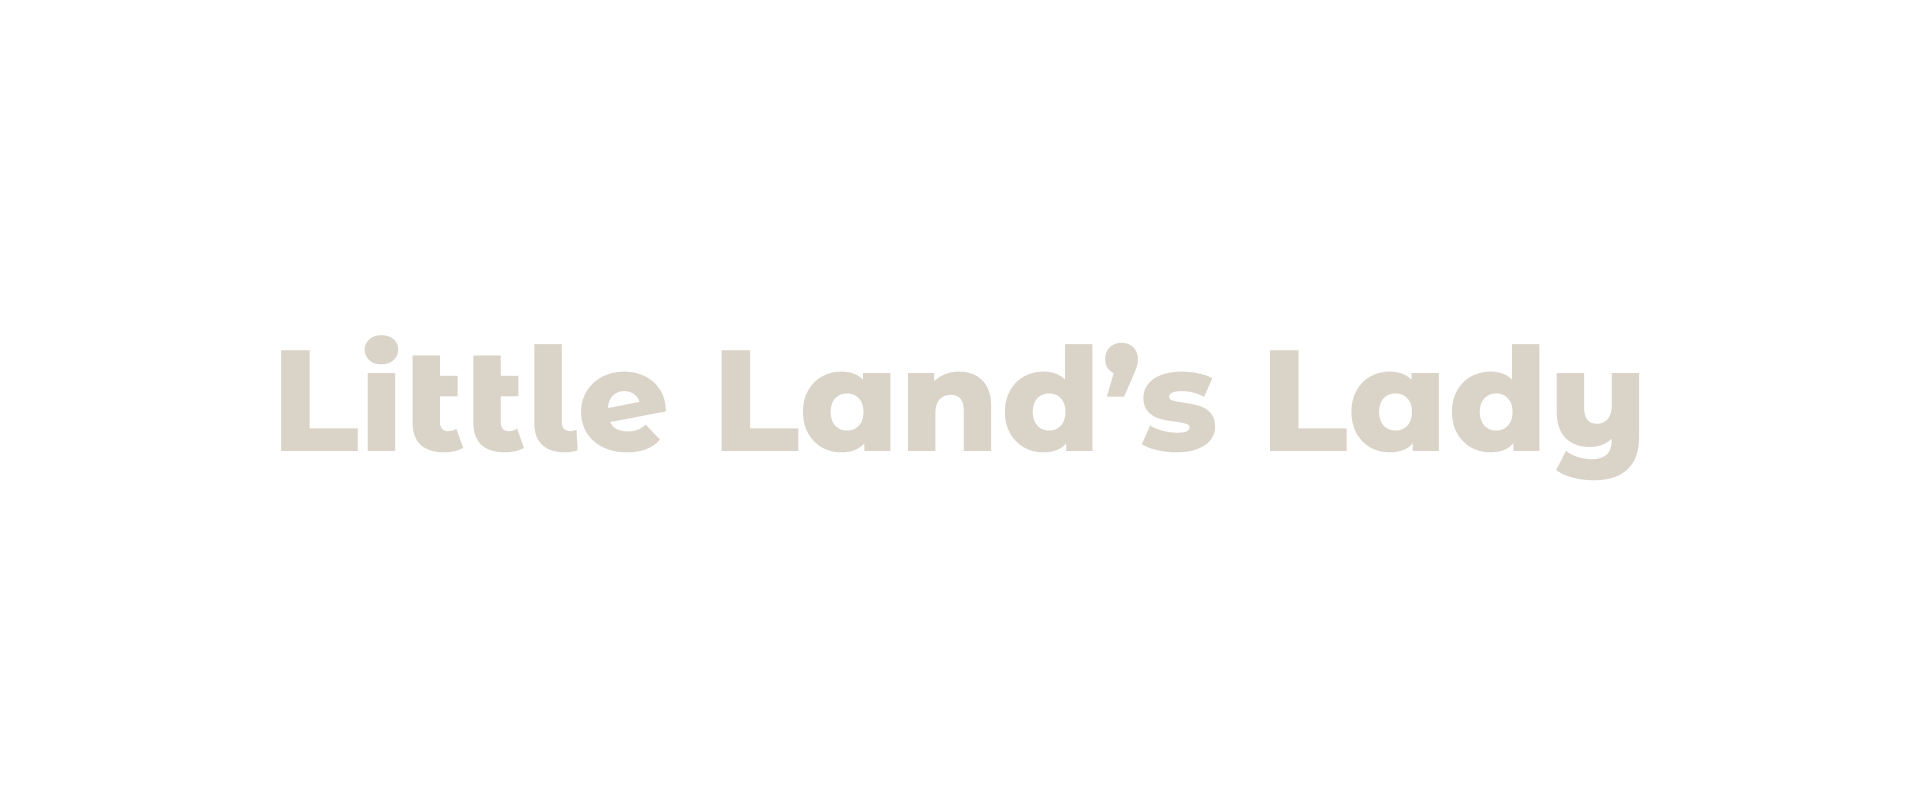 Little Land's Lady